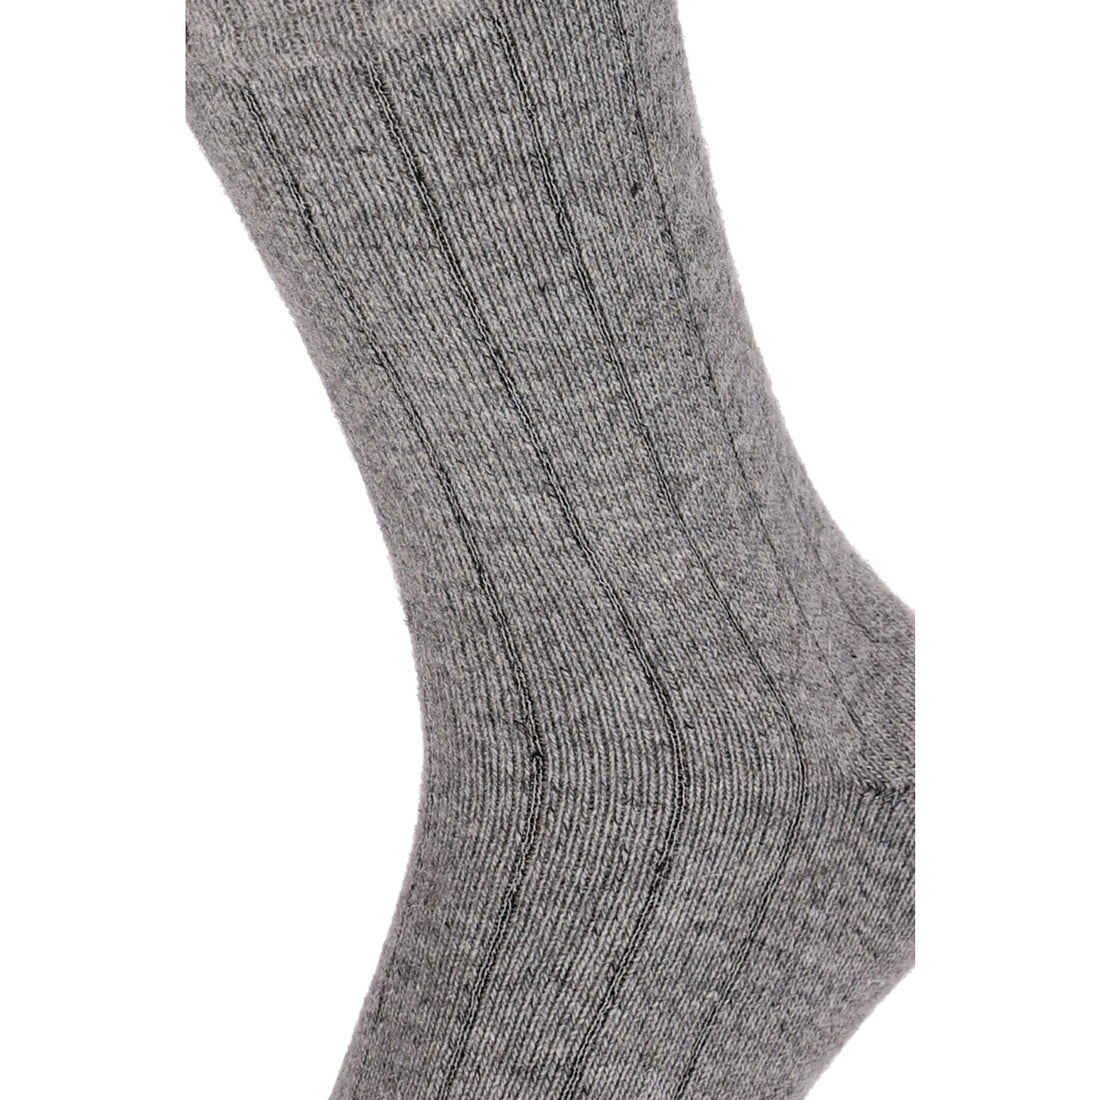 ChiliLifestyle Socken Winter Merino Wolle Damen Herren Warm 2 Paar